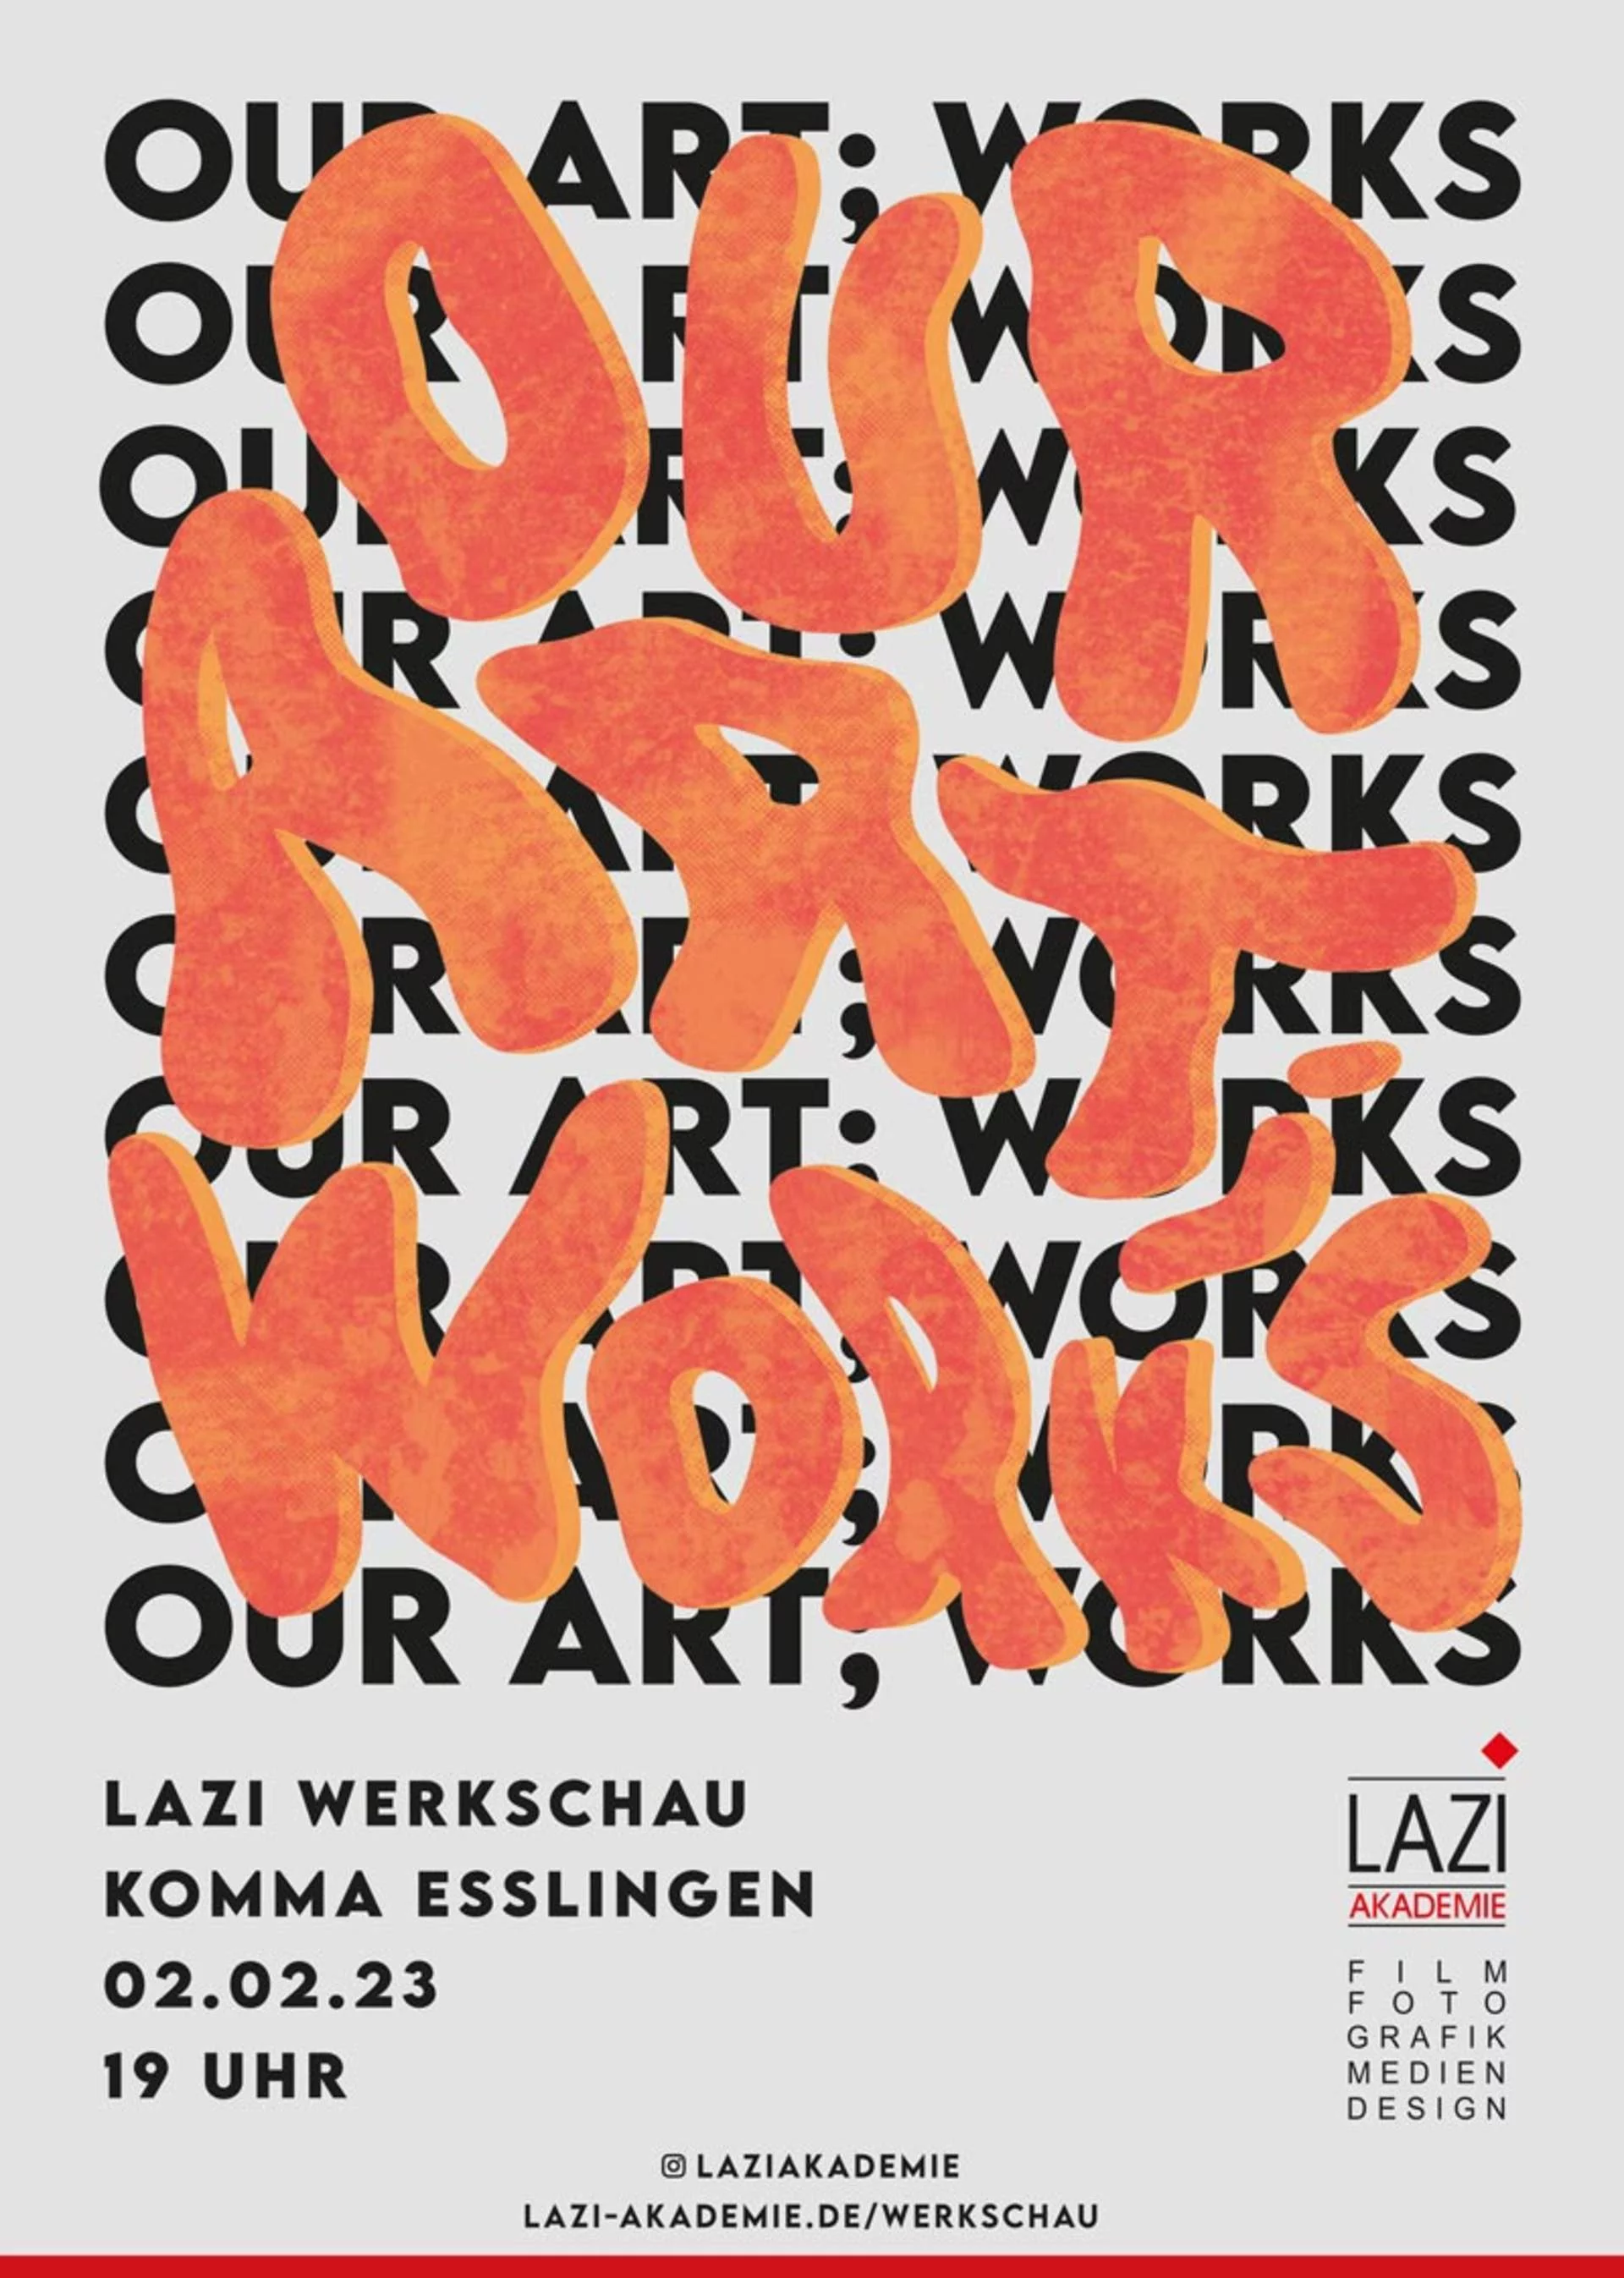 csm_Lazi-Akademie-Werkschau-our-art_-works_02190a39d4.jpg Kopie